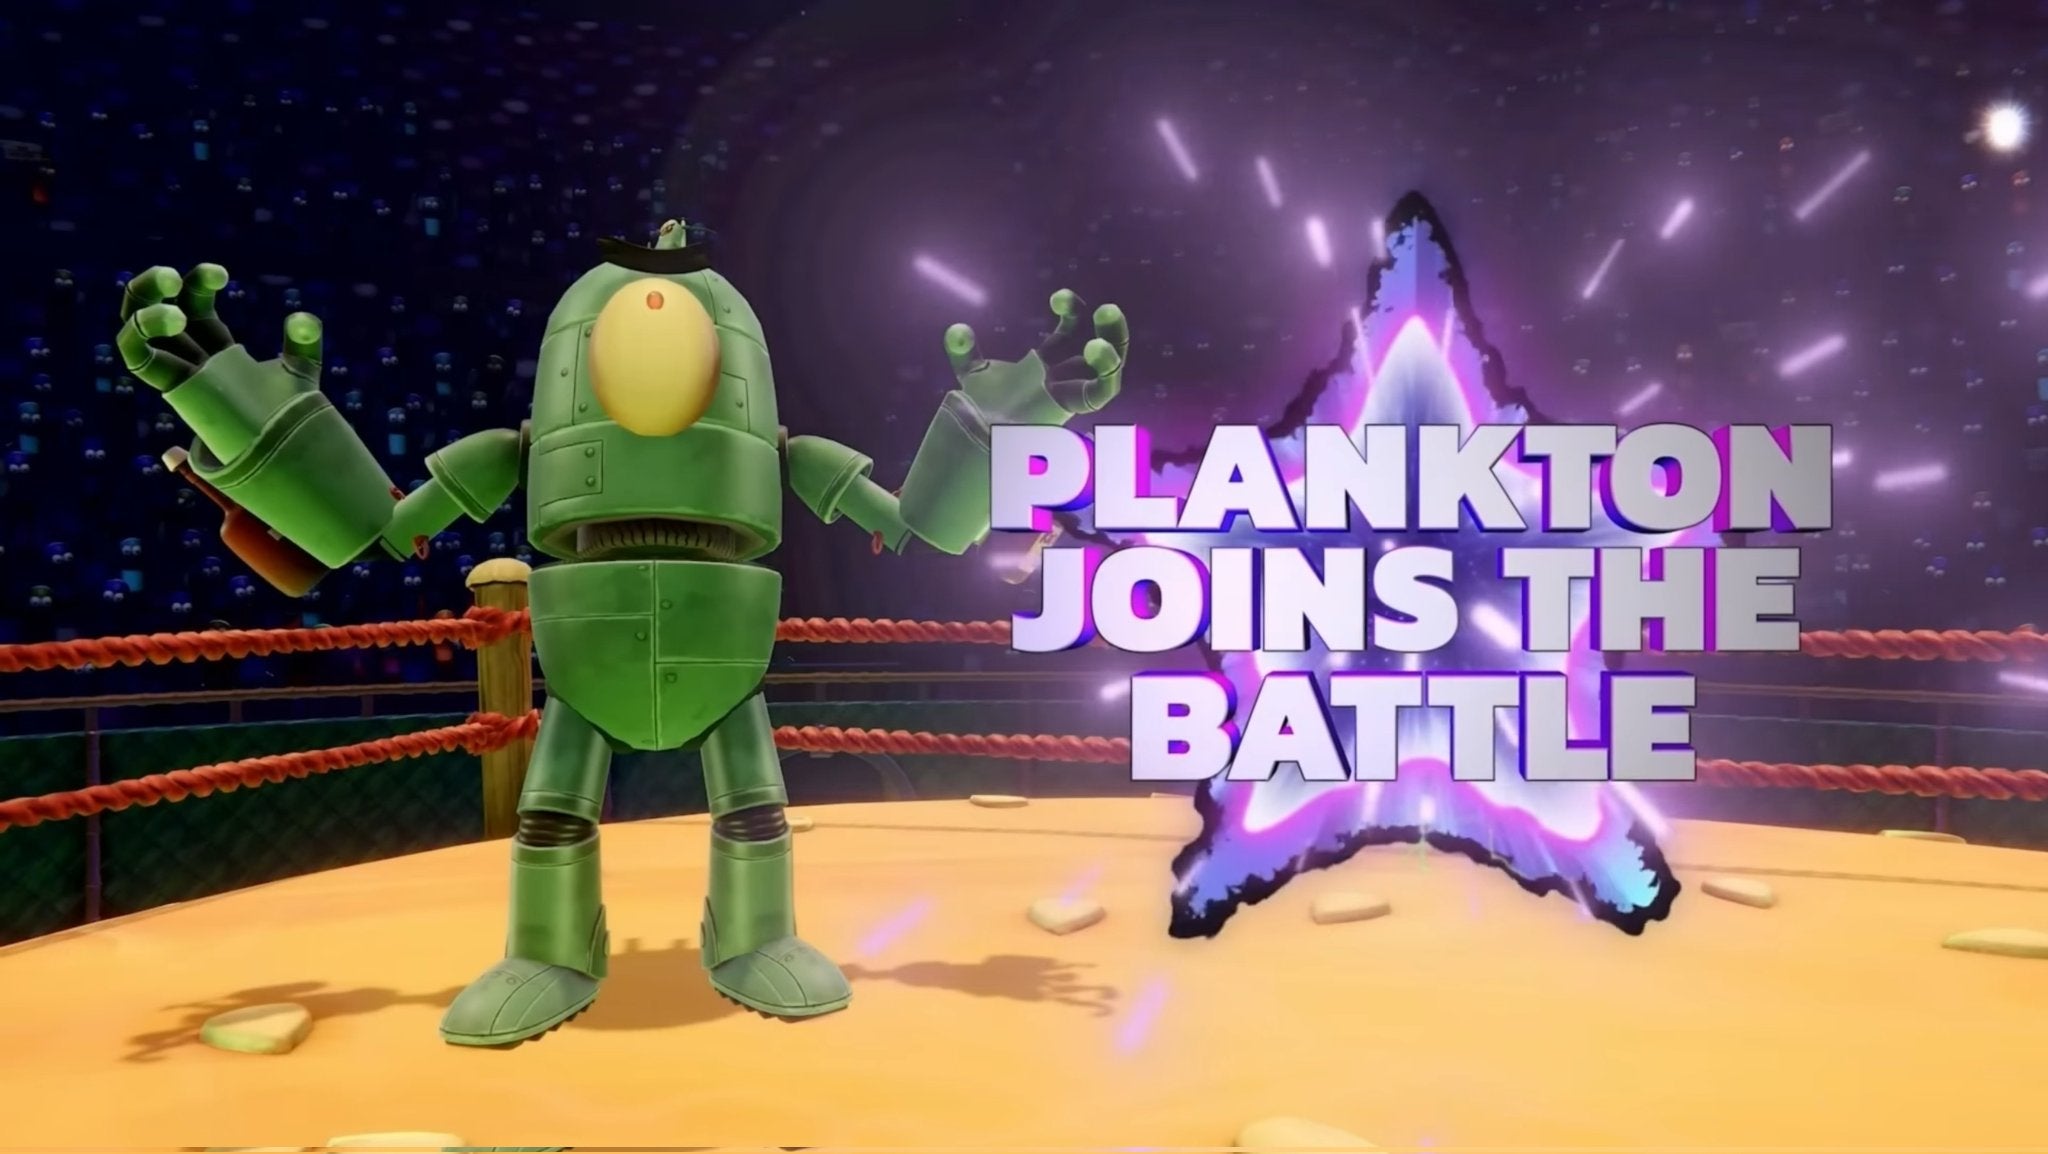 Plankton ujawniony jako następna postać Nick All-Stars Brawl 2 z pełnym opisem autorstwa Smash Pro